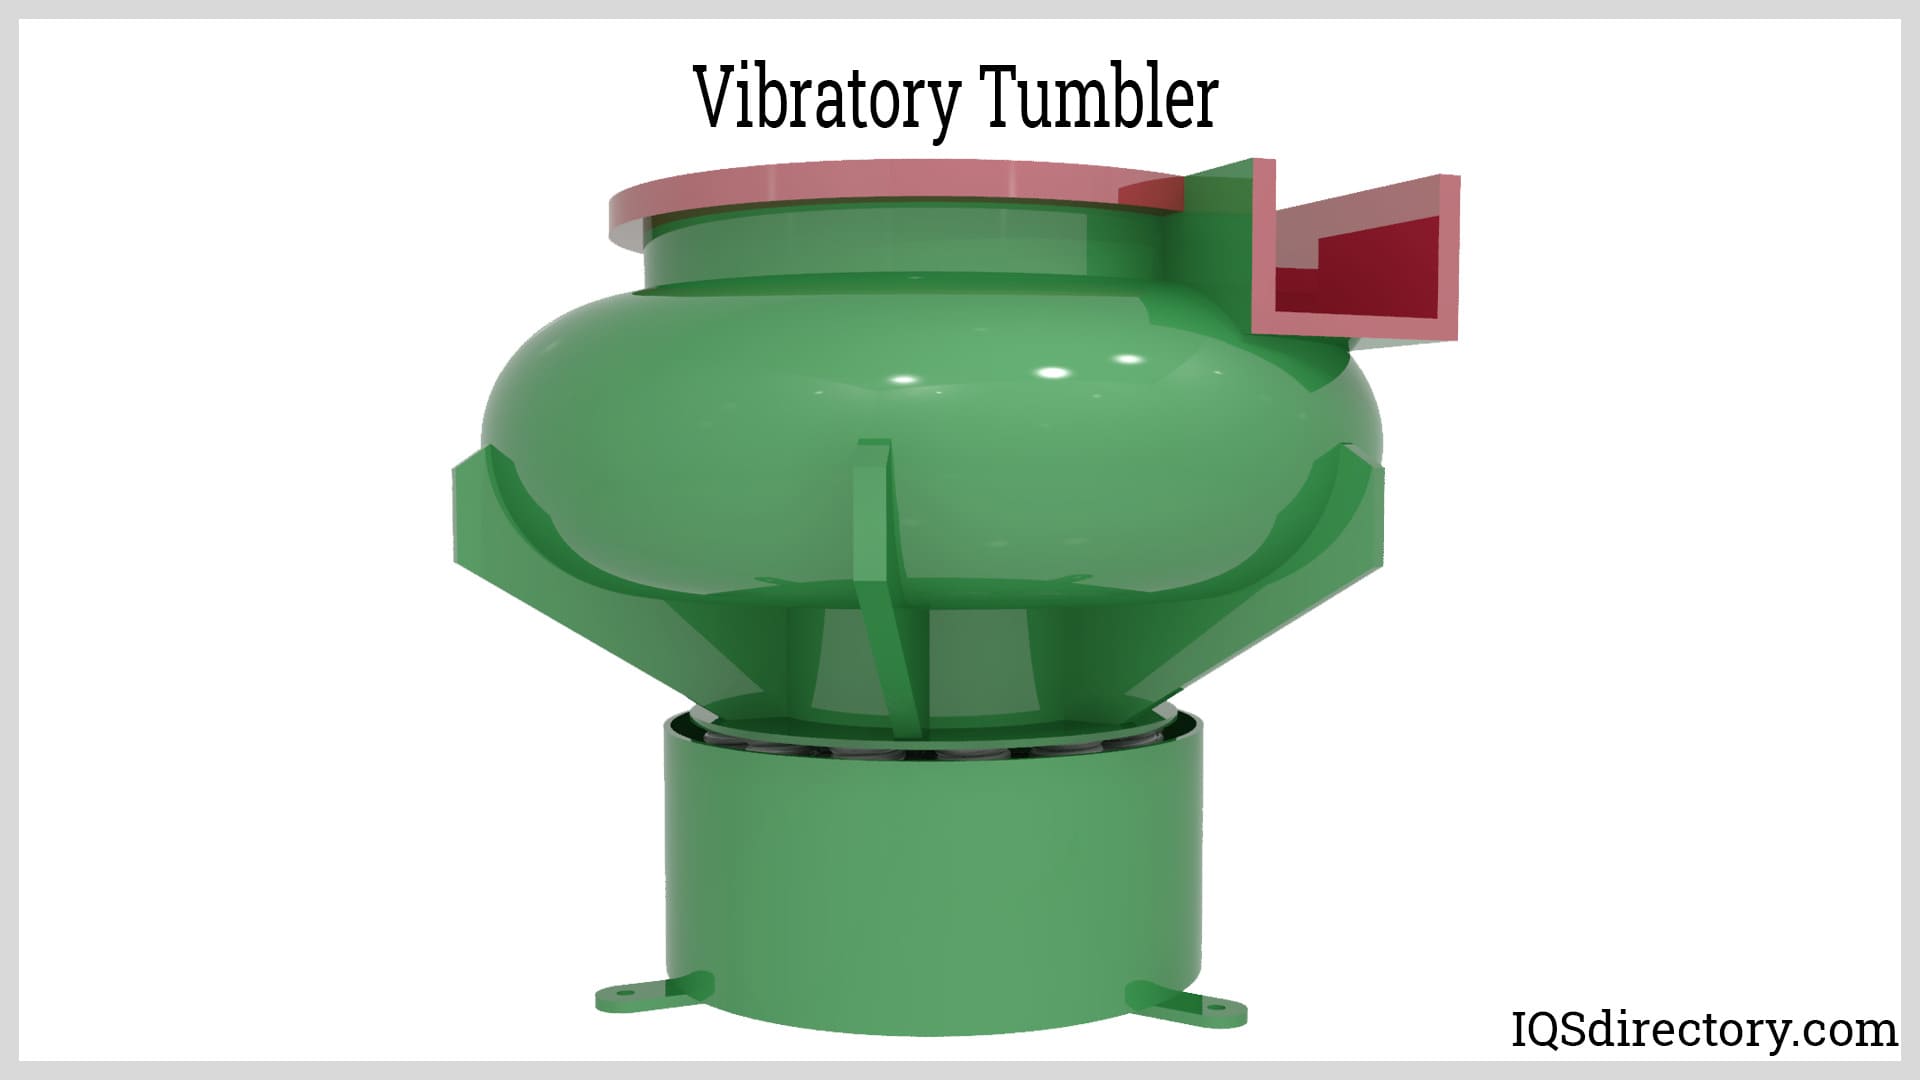 Vibratory Tumbler